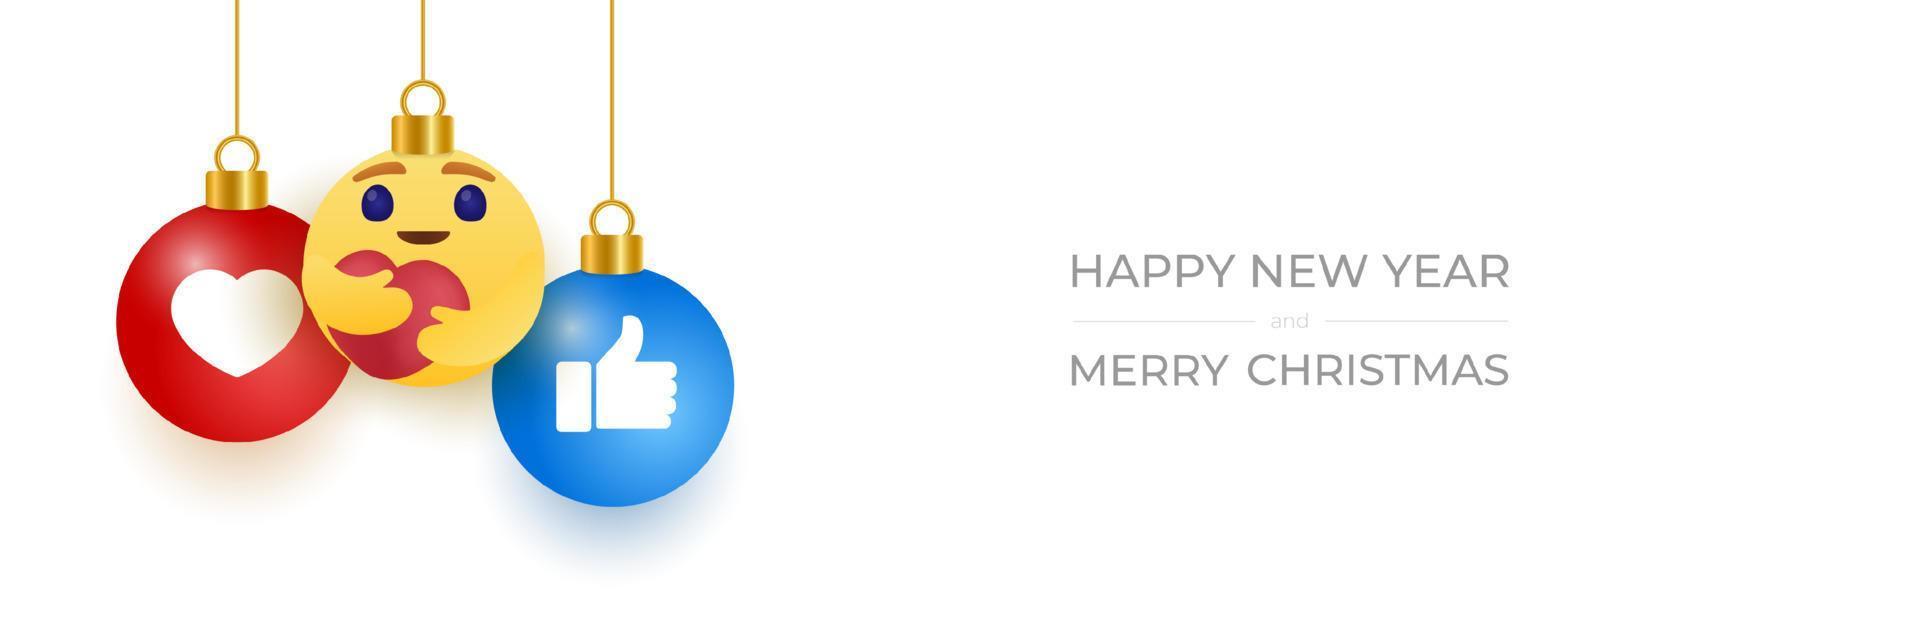 cartão de felicitações para o ano novo de 2021 com um rosto sorridente de emoji pendurado no fio como um brinquedo de Natal, bola ou bugiganga. ilustração em vetor conceito emoção ano novo.